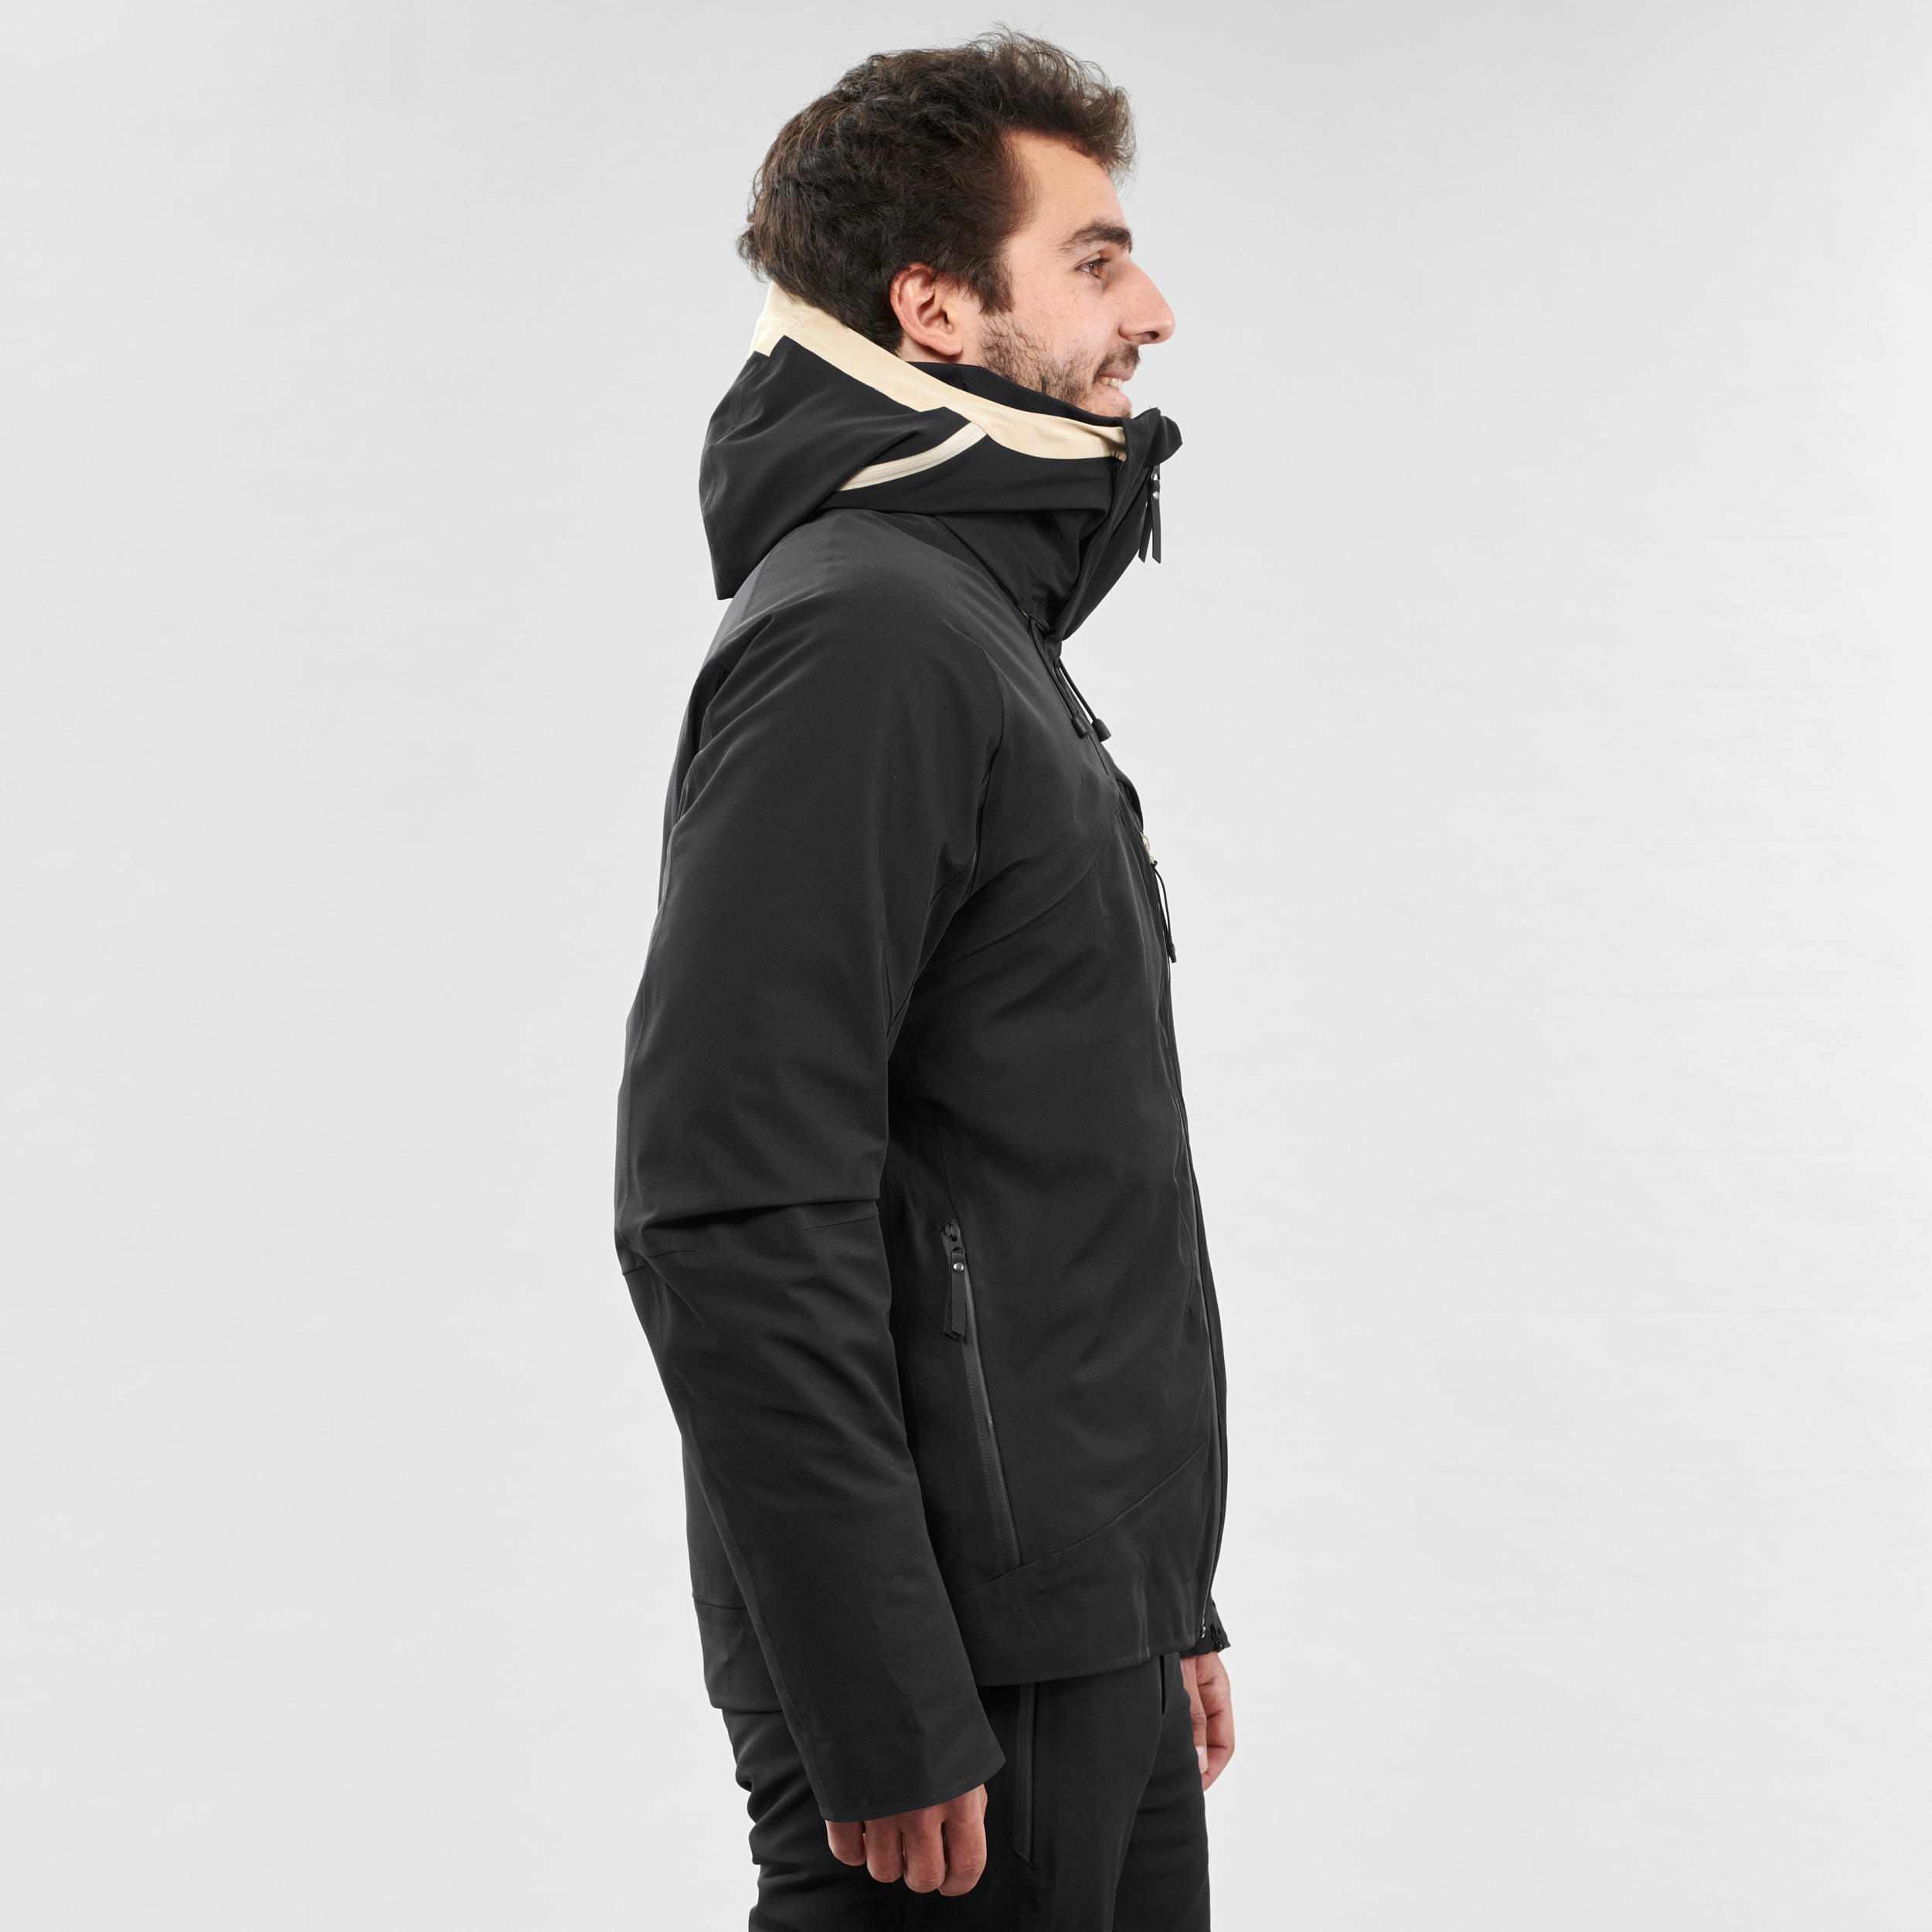 Manteau de ski et sous-manteau homme – 980 noir - WEDZE